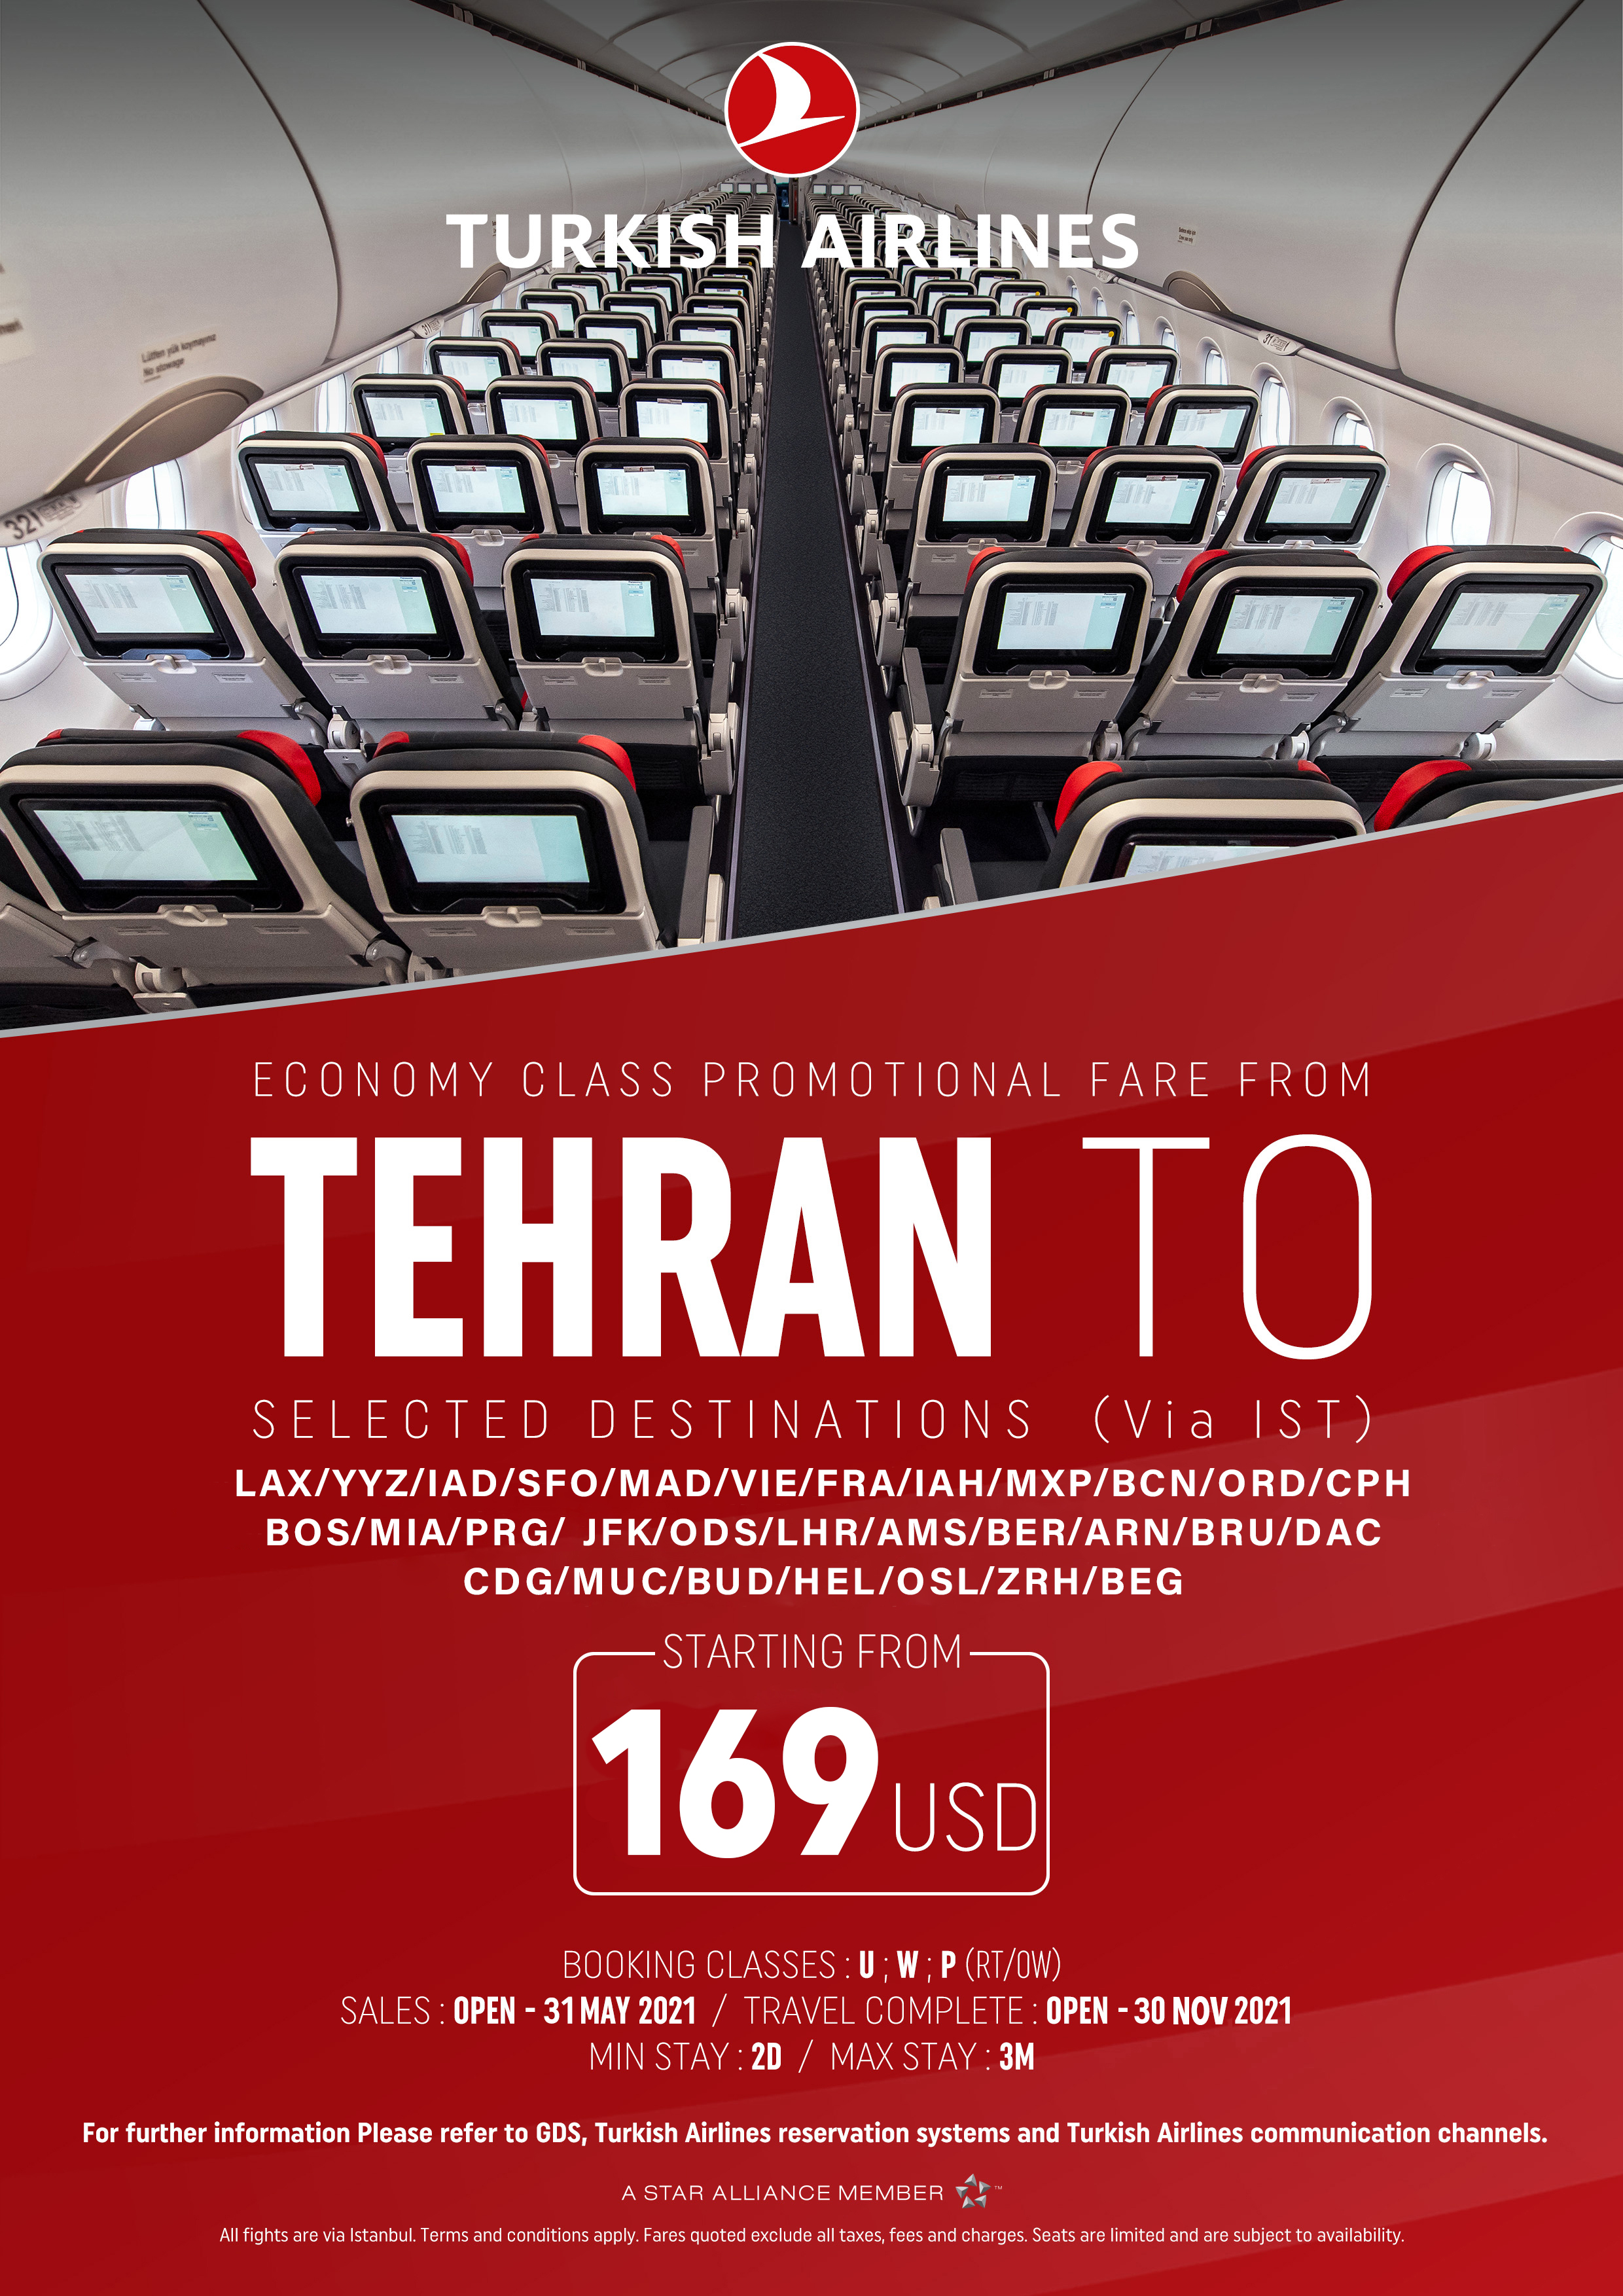 بخشنامه و اطلاعیه   هواپیمایی ترکیش درباره نرخهای ویژه از تهران در کلاسهای اکونومی